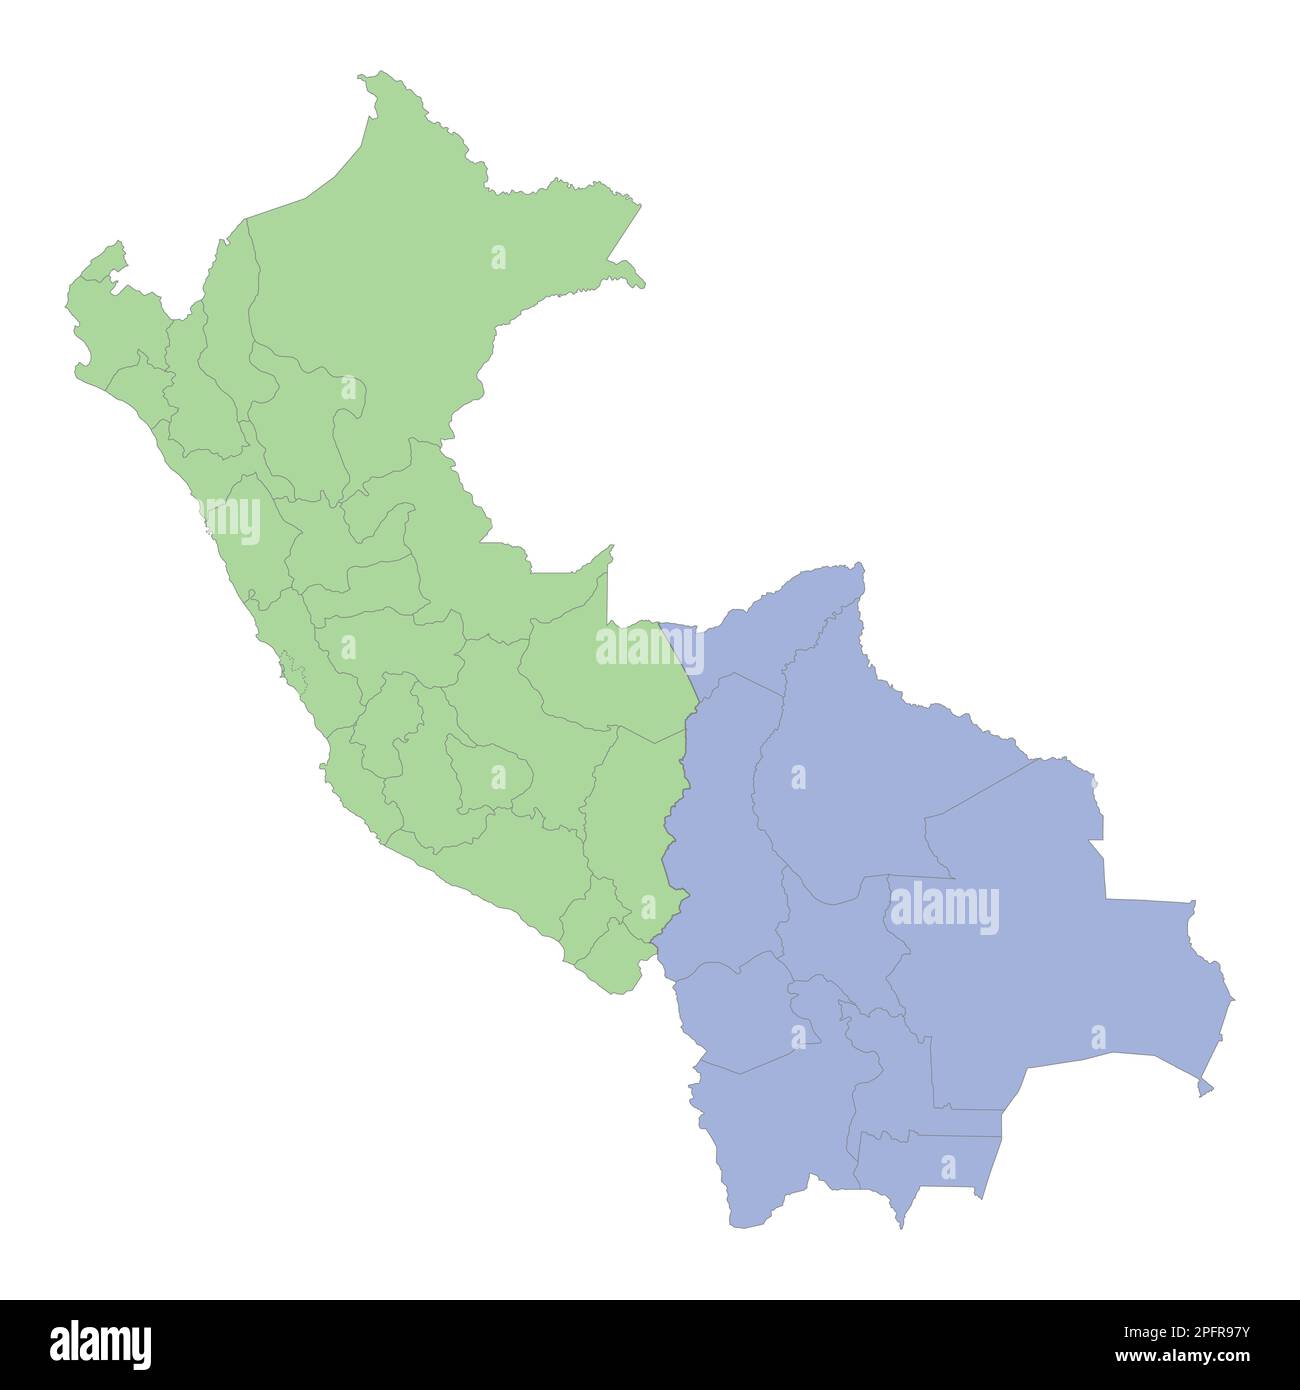 Mappa politica di alta qualità del Perù e della Bolivia con i confini delle regioni o province. Illustrazione vettoriale Illustrazione Vettoriale